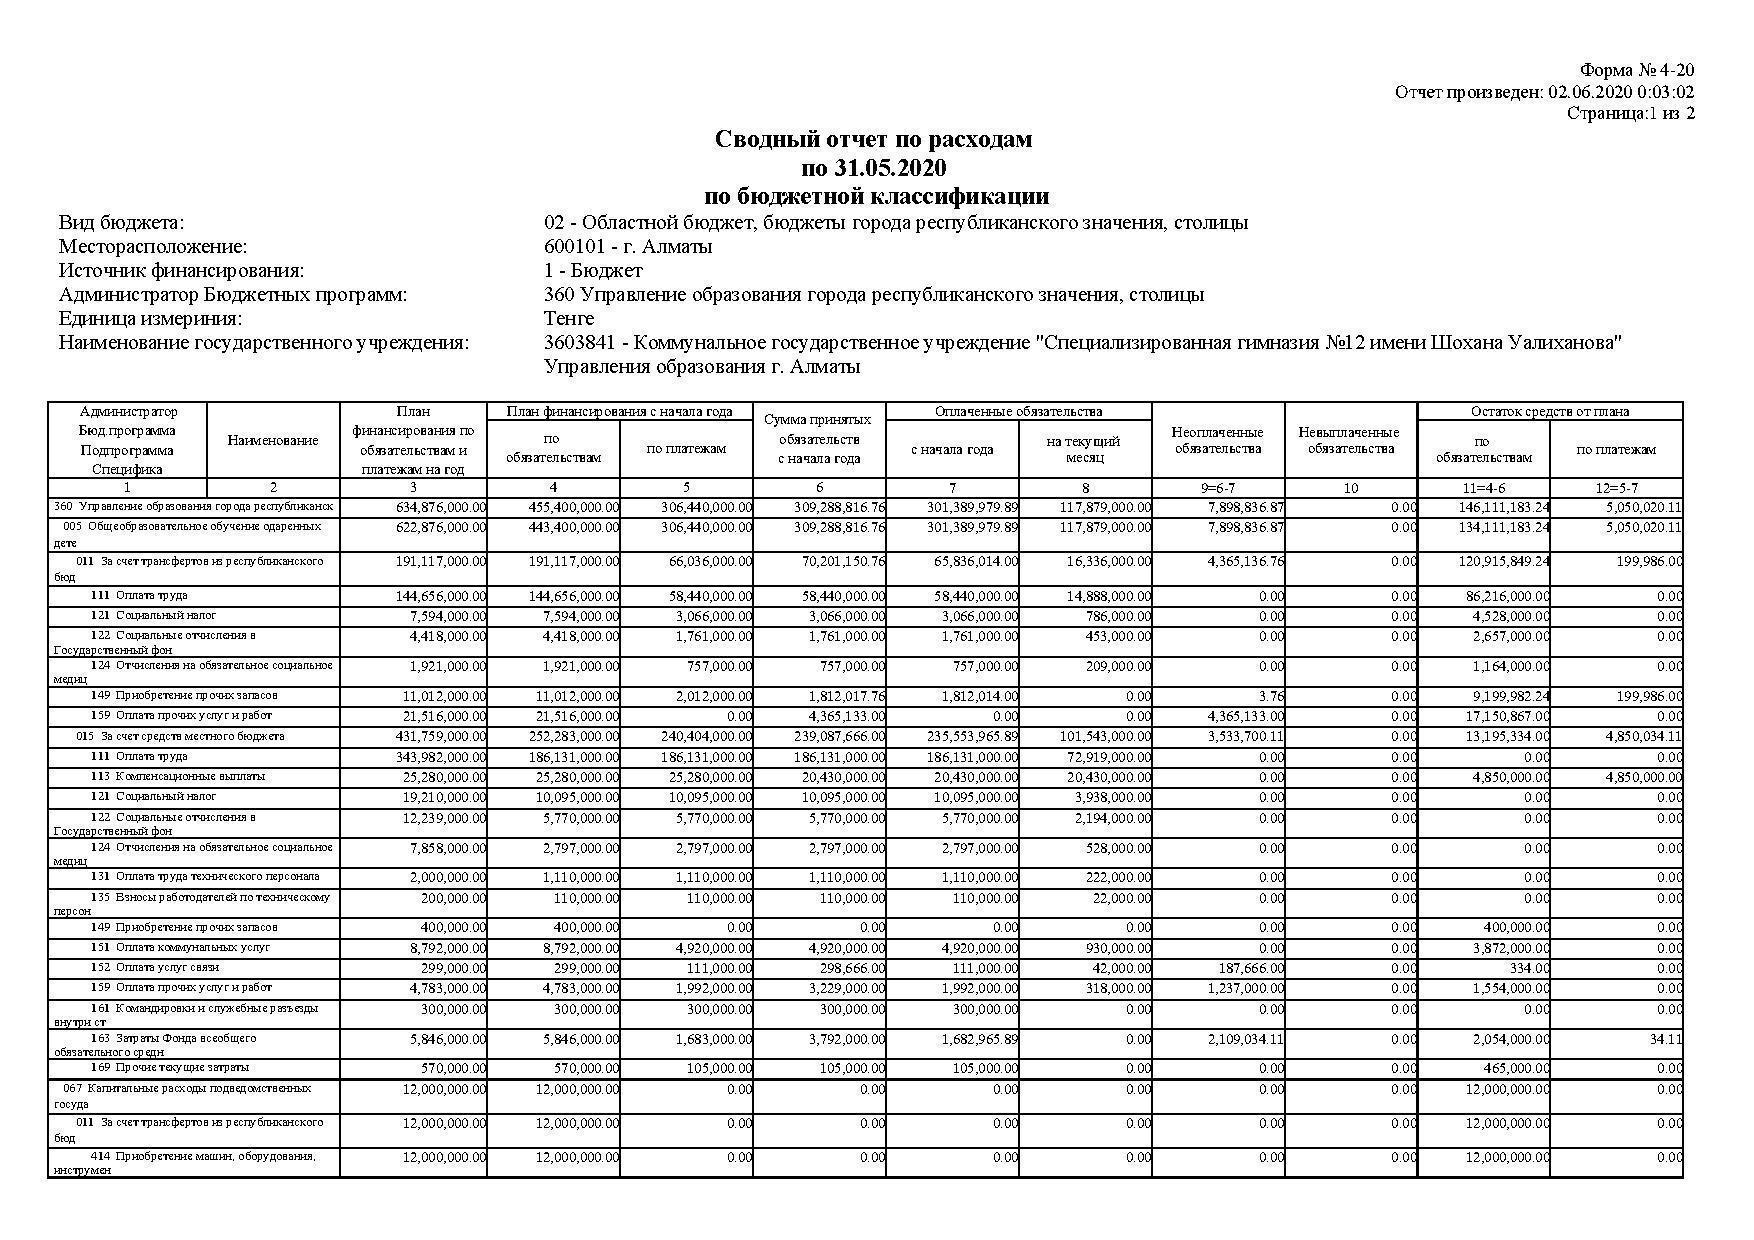 Сводный отчет по расходам по 31.05.2020 по бюджетной классификации